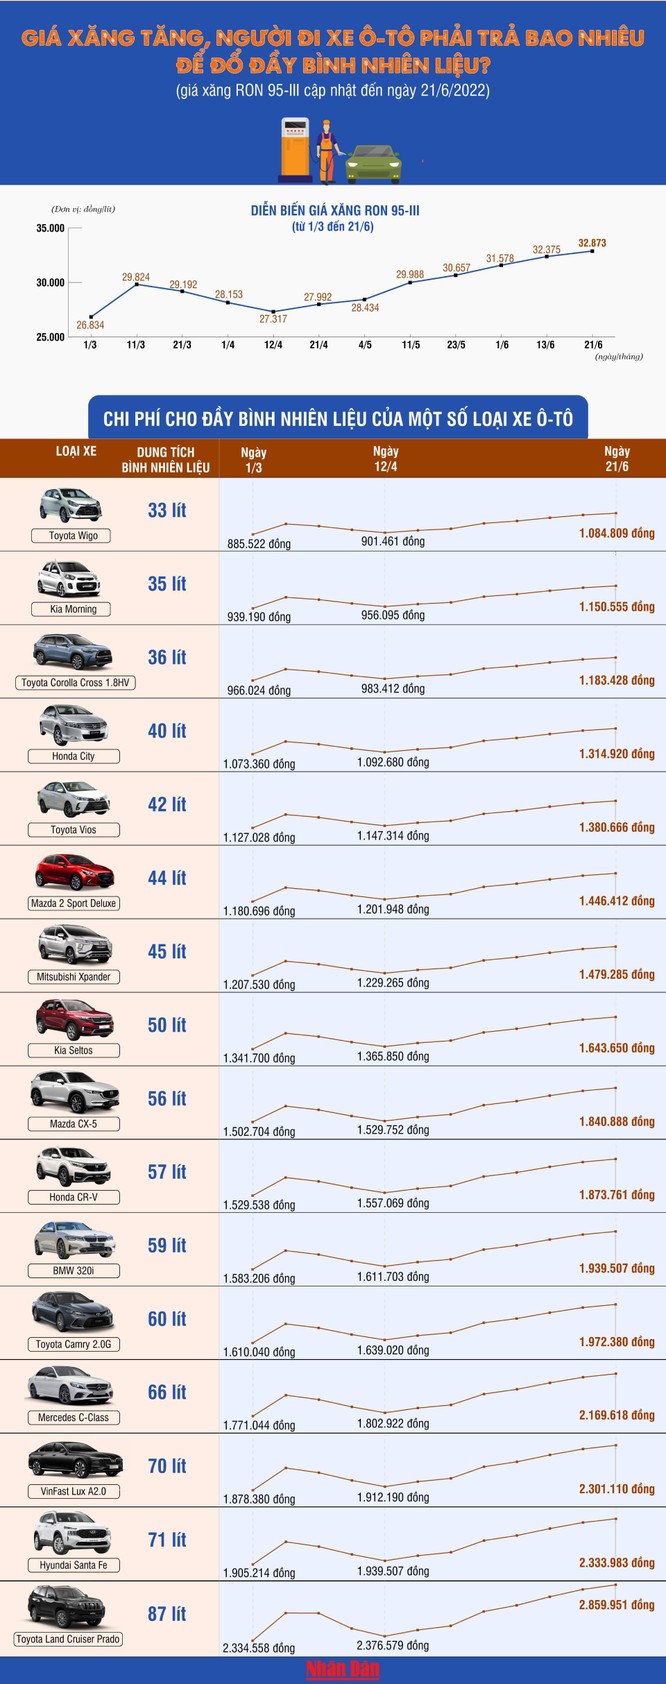 Infographic: Giá xăng tăng, người đi ô-tô phải trả bao nhiêu để đổ đầy bình nhiên liệu? ảnh 1